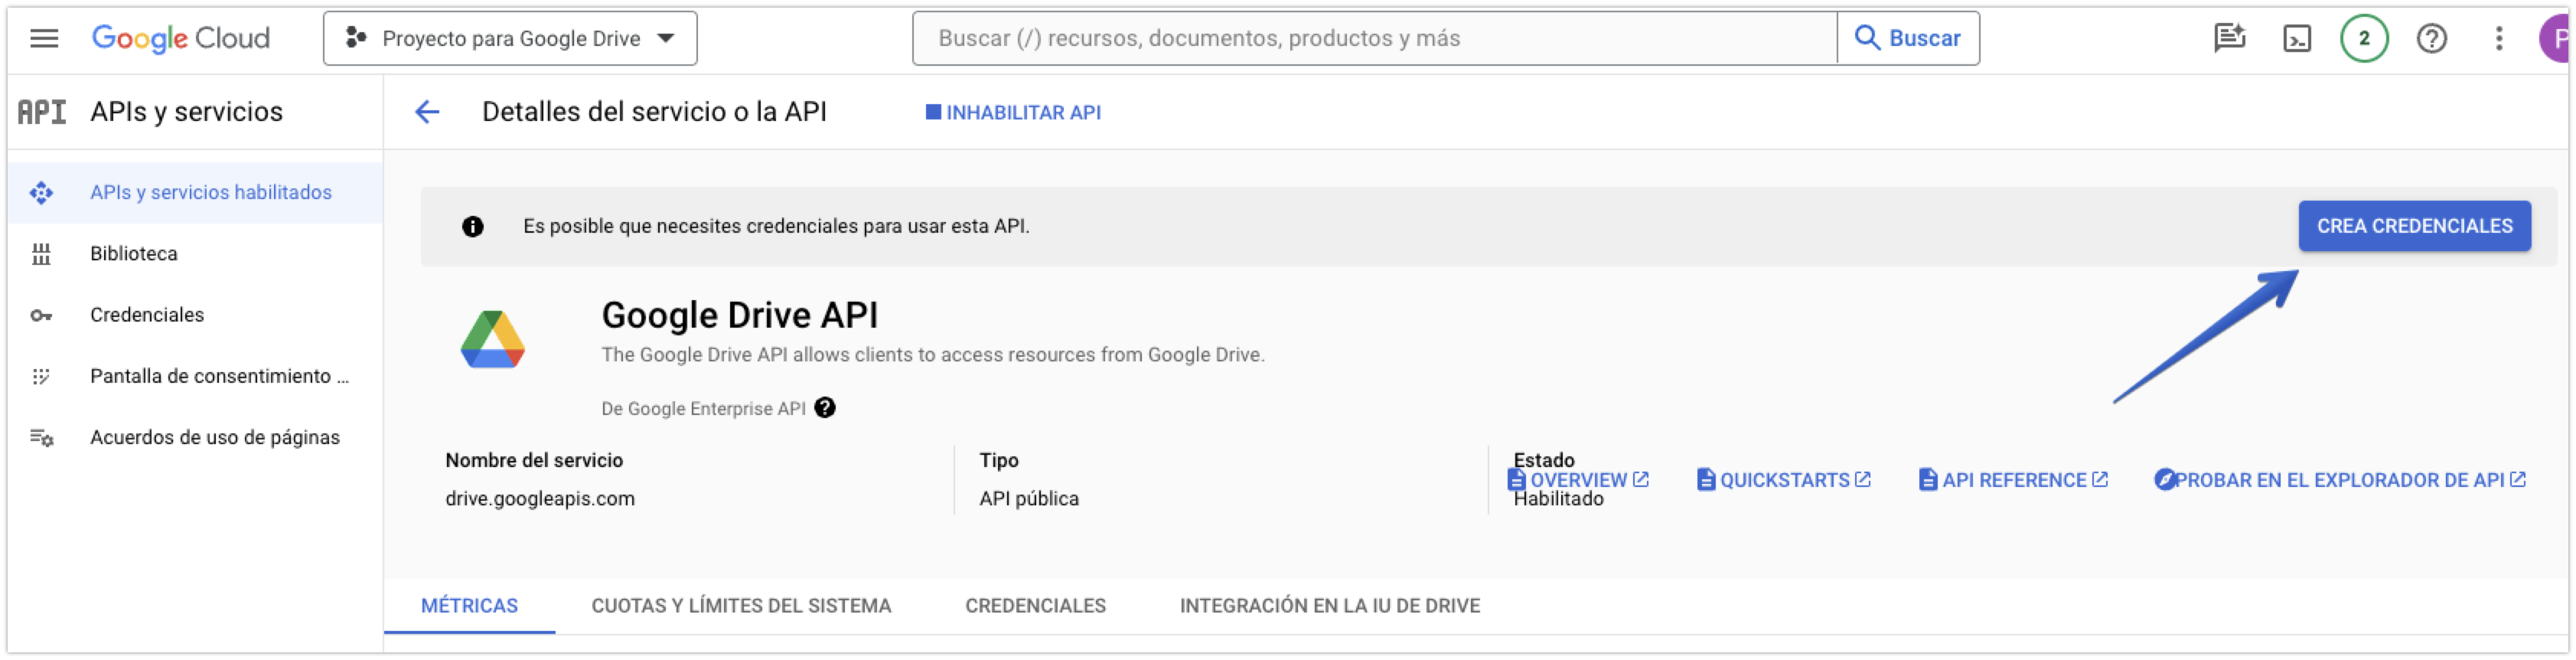 Botón Crea credenciales en la Google Drive API